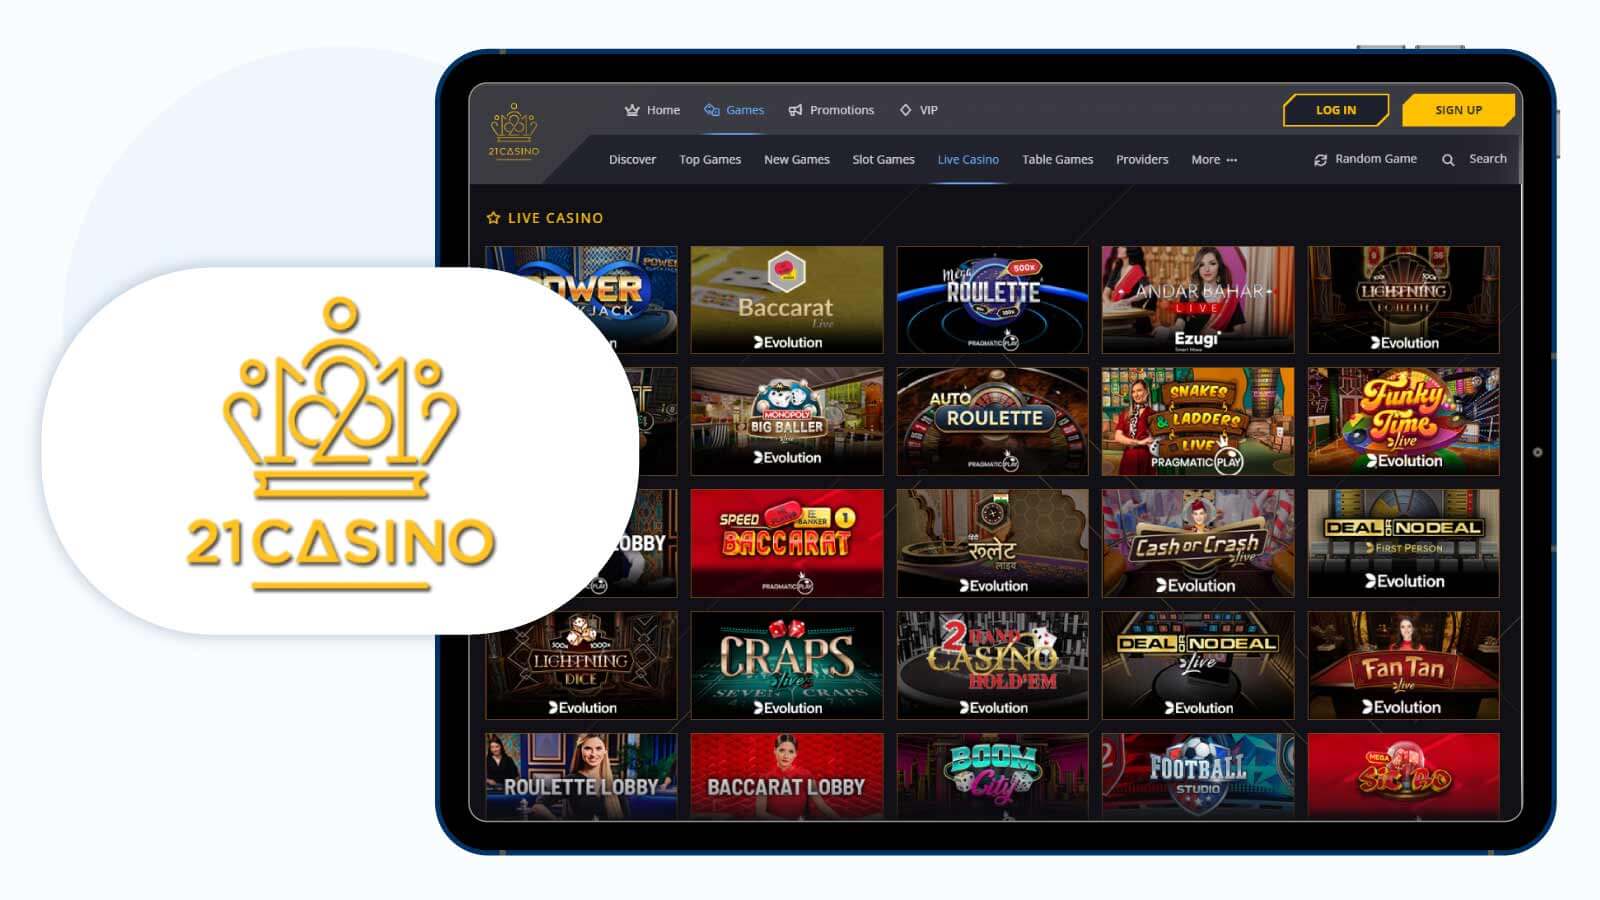 21Casino Best $10 Minimum Deposit Casino for Live Dealer Casino Games